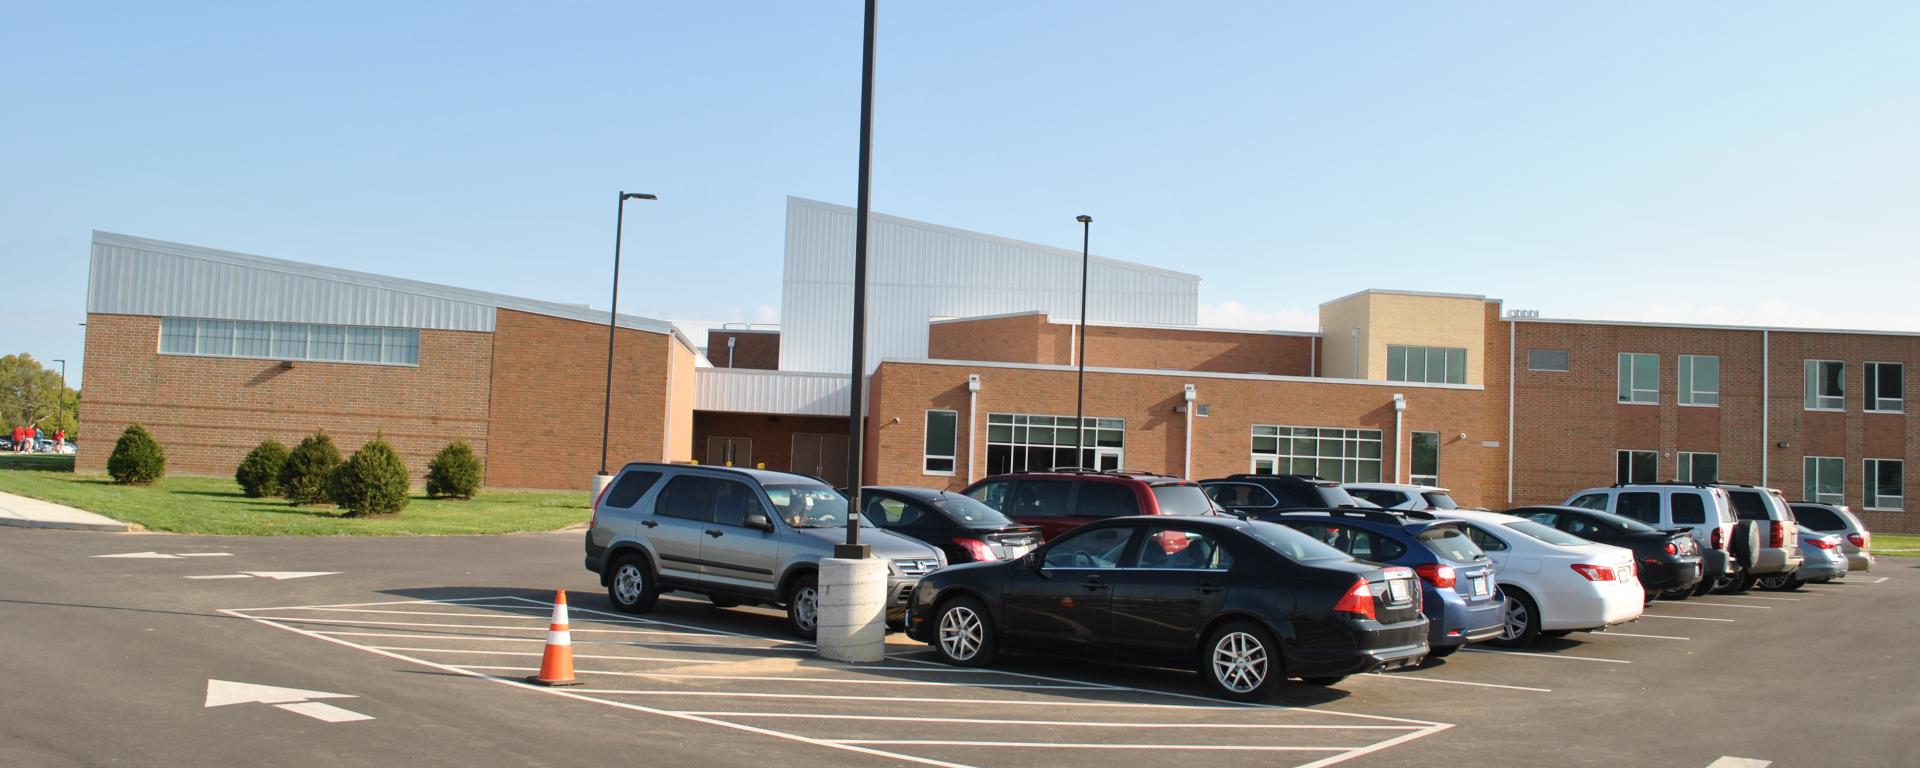 parking lot of school building